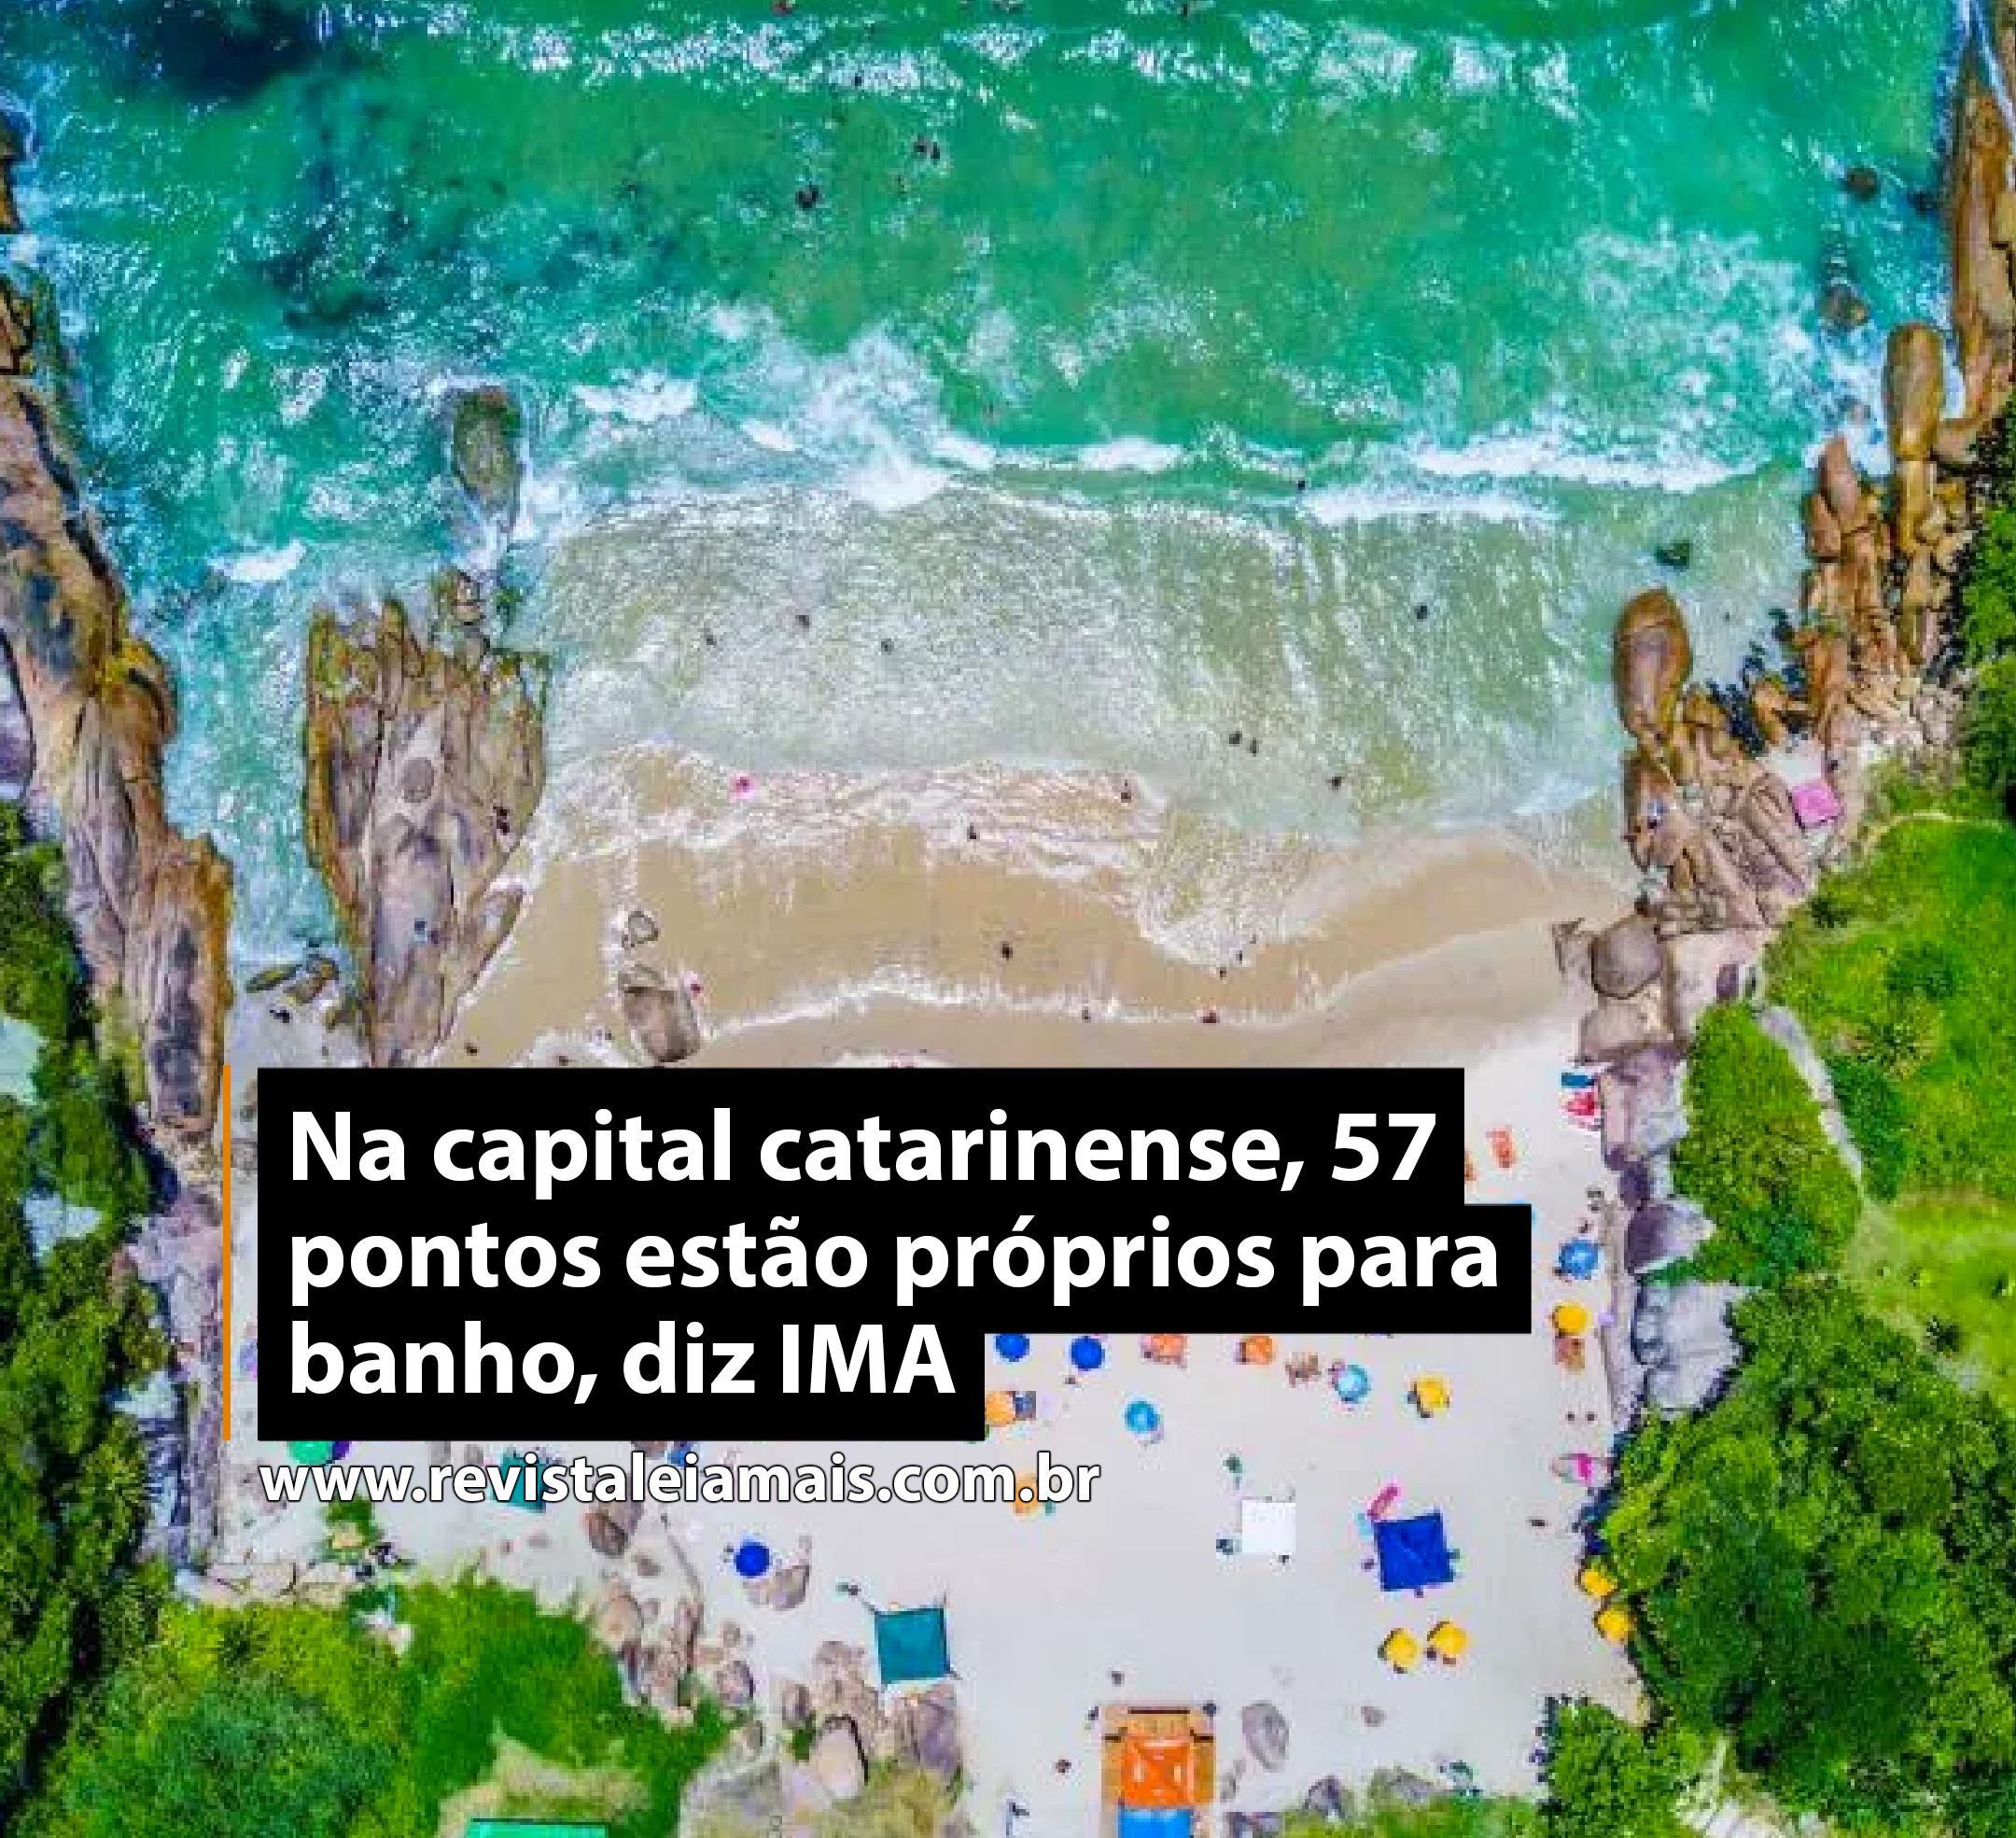 Na capital catarinense, 57 pontos estão próprios para banho, diz IMA